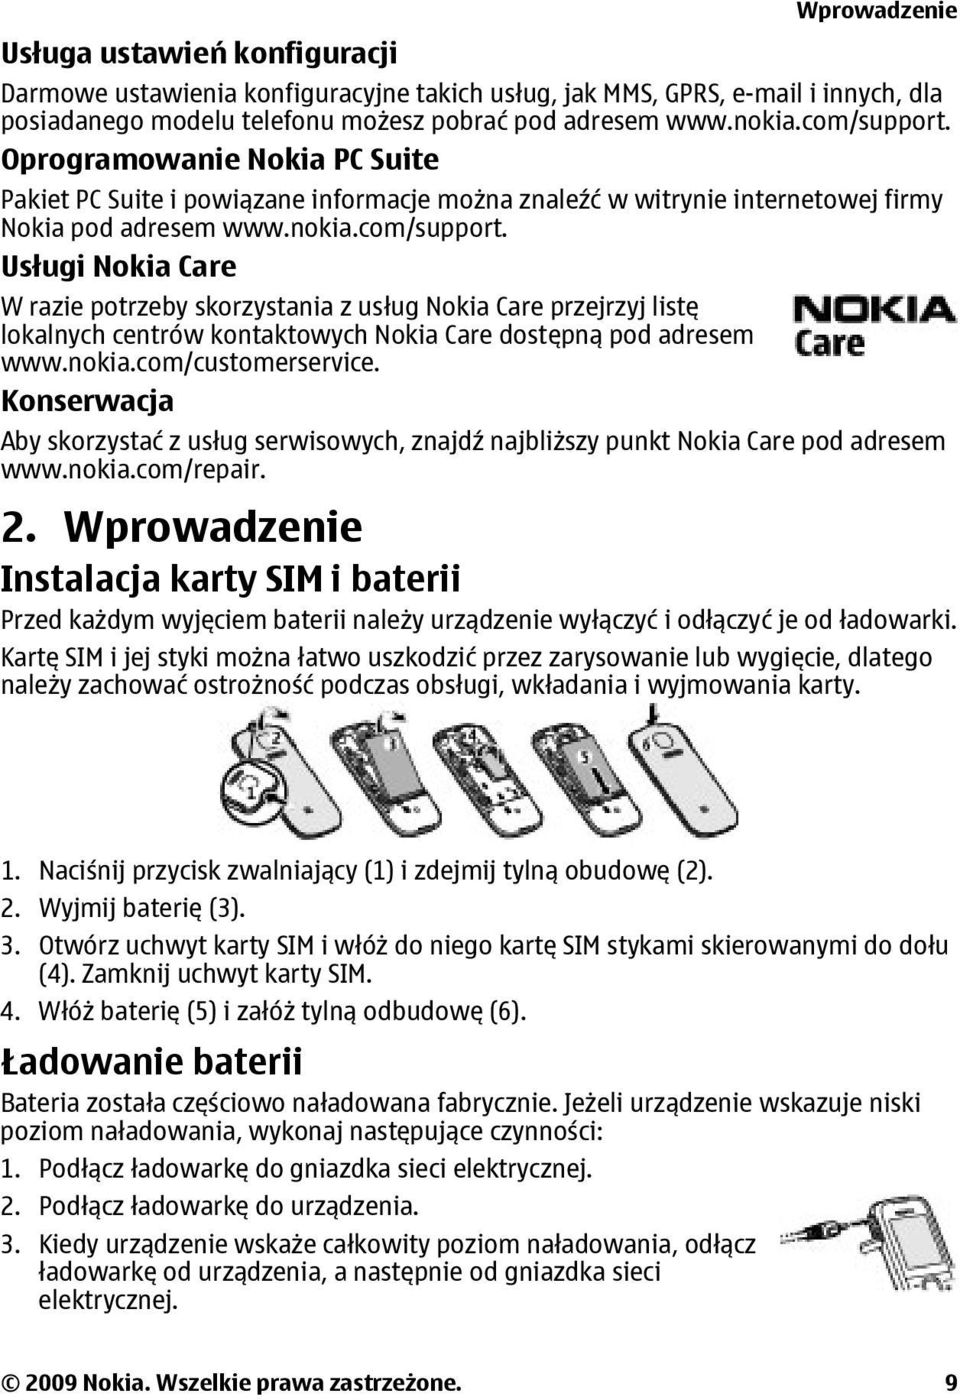 nokia.com/customerservice. Konserwacja Aby skorzystać z usług serwisowych, znajdź najbliższy punkt Nokia Care pod adresem www.nokia.com/repair. 2.